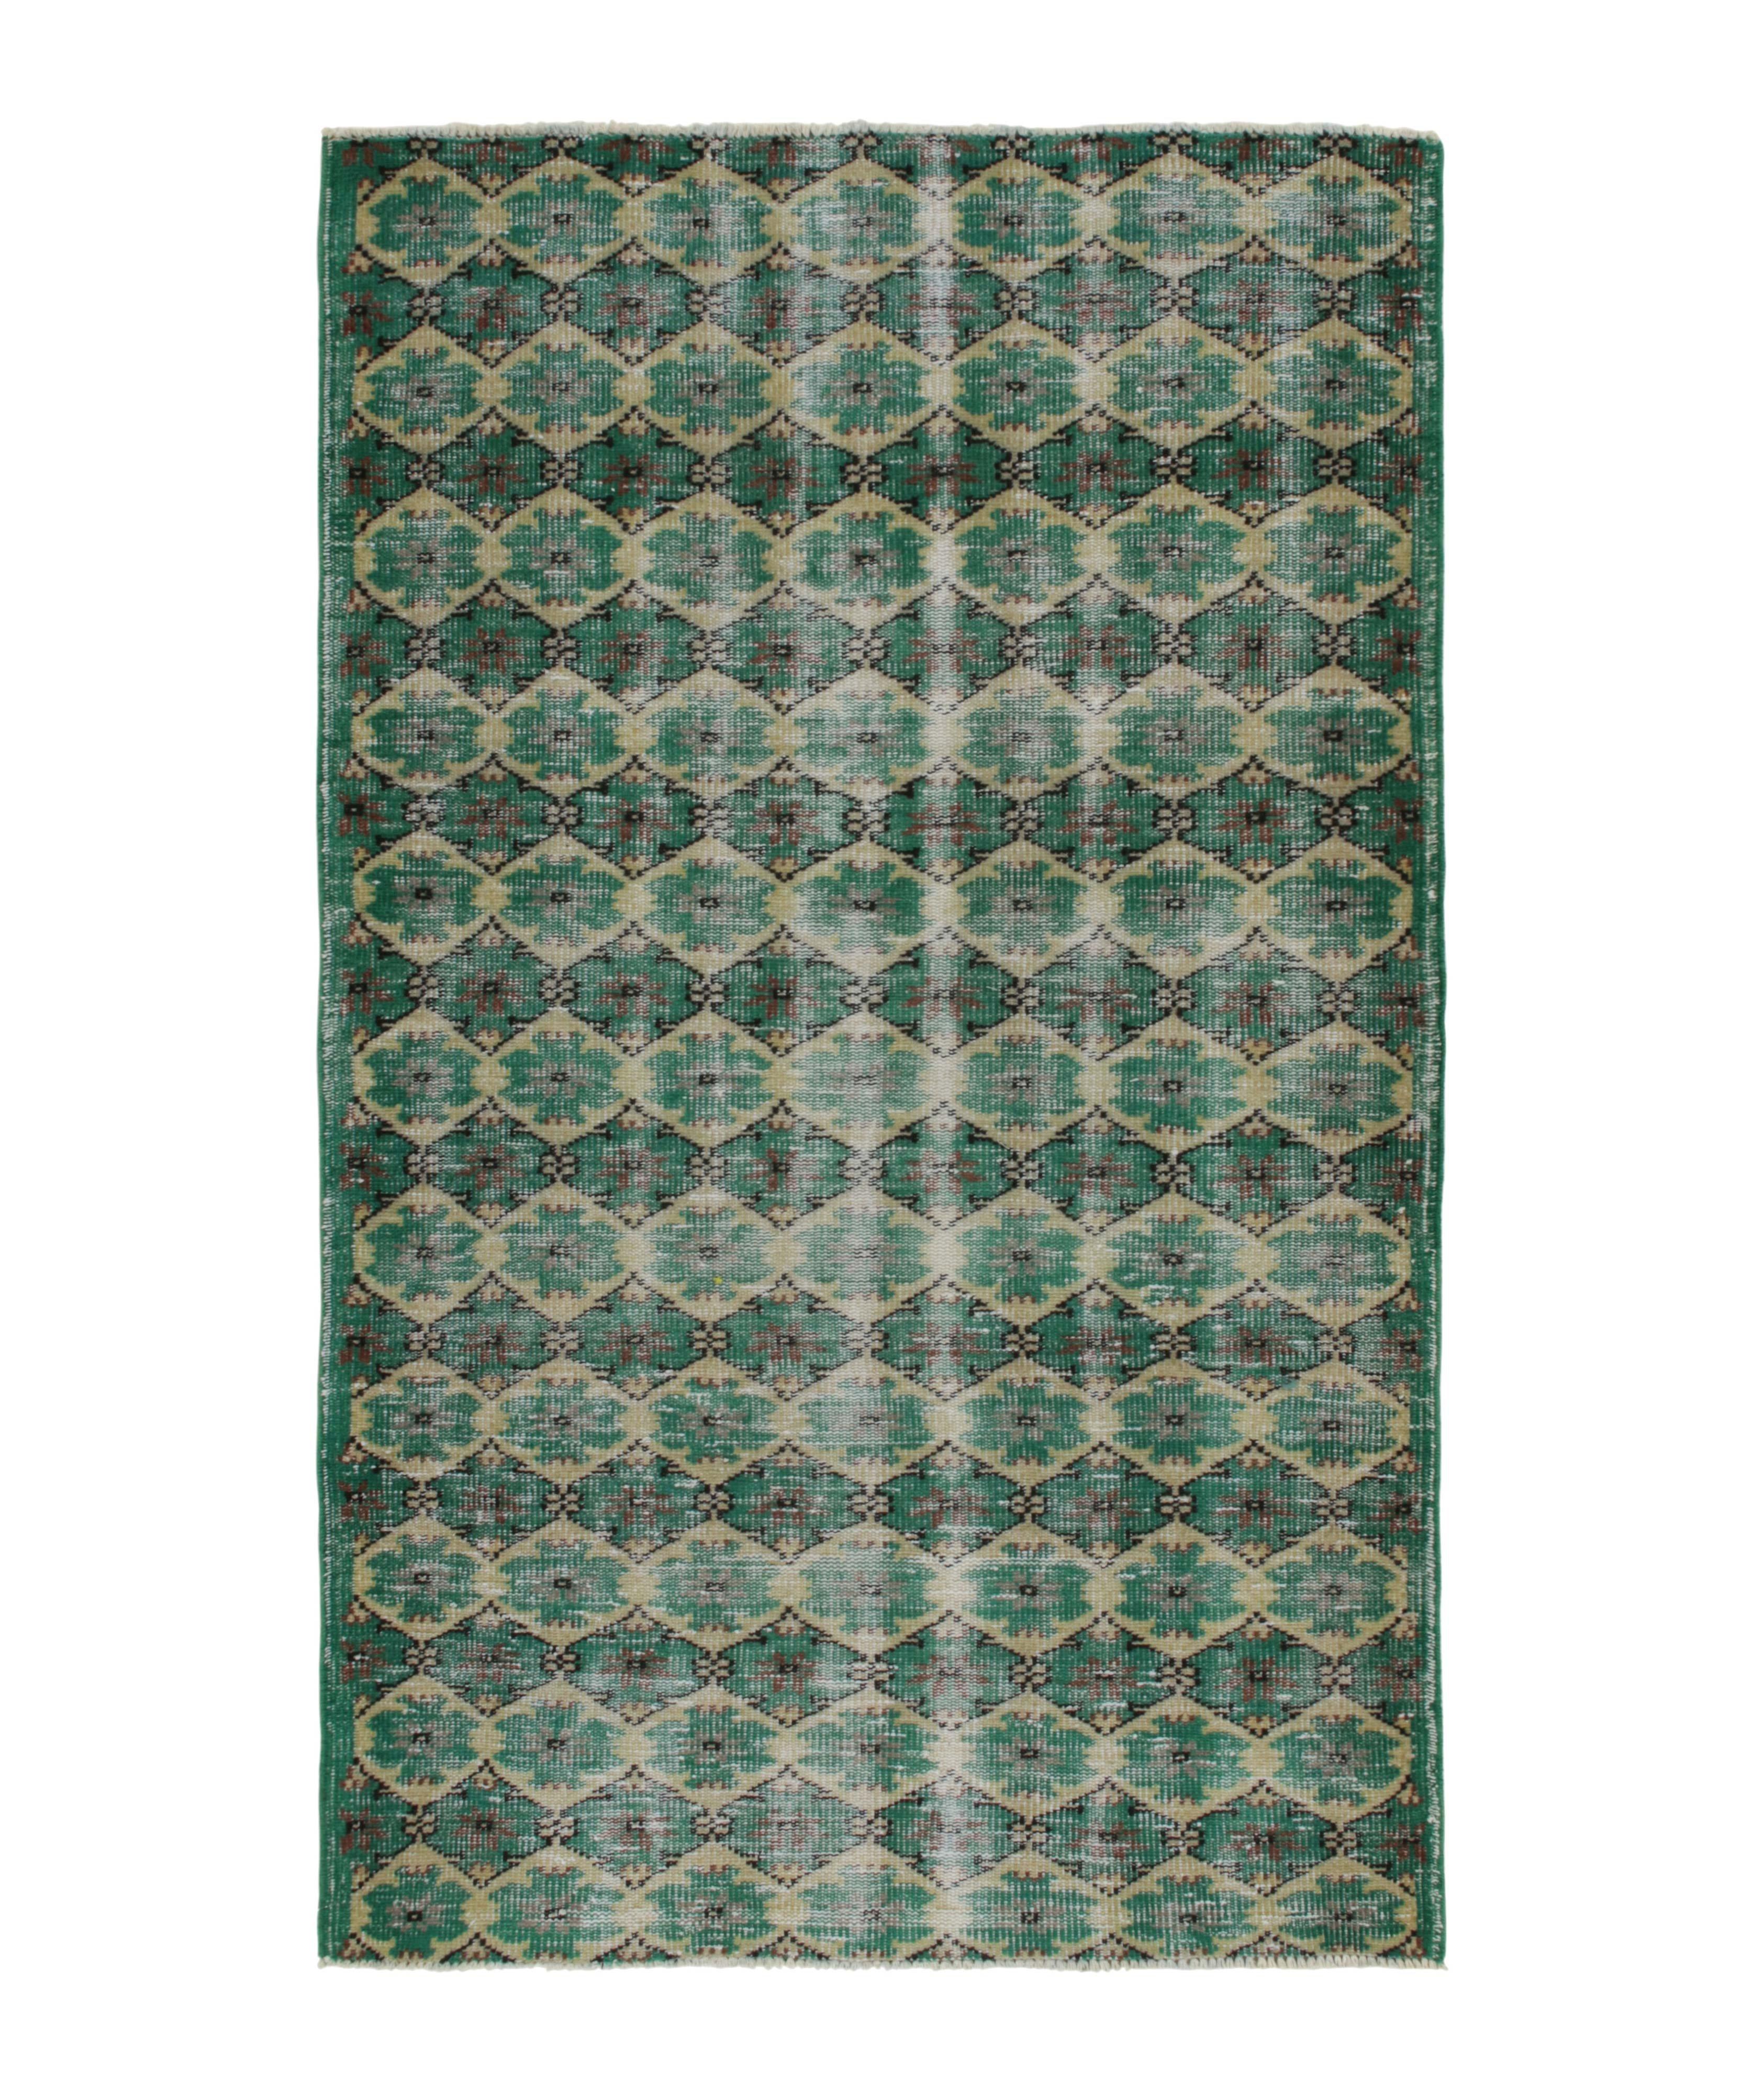 1960s Vintage Distressed Lattice Pattern Rug